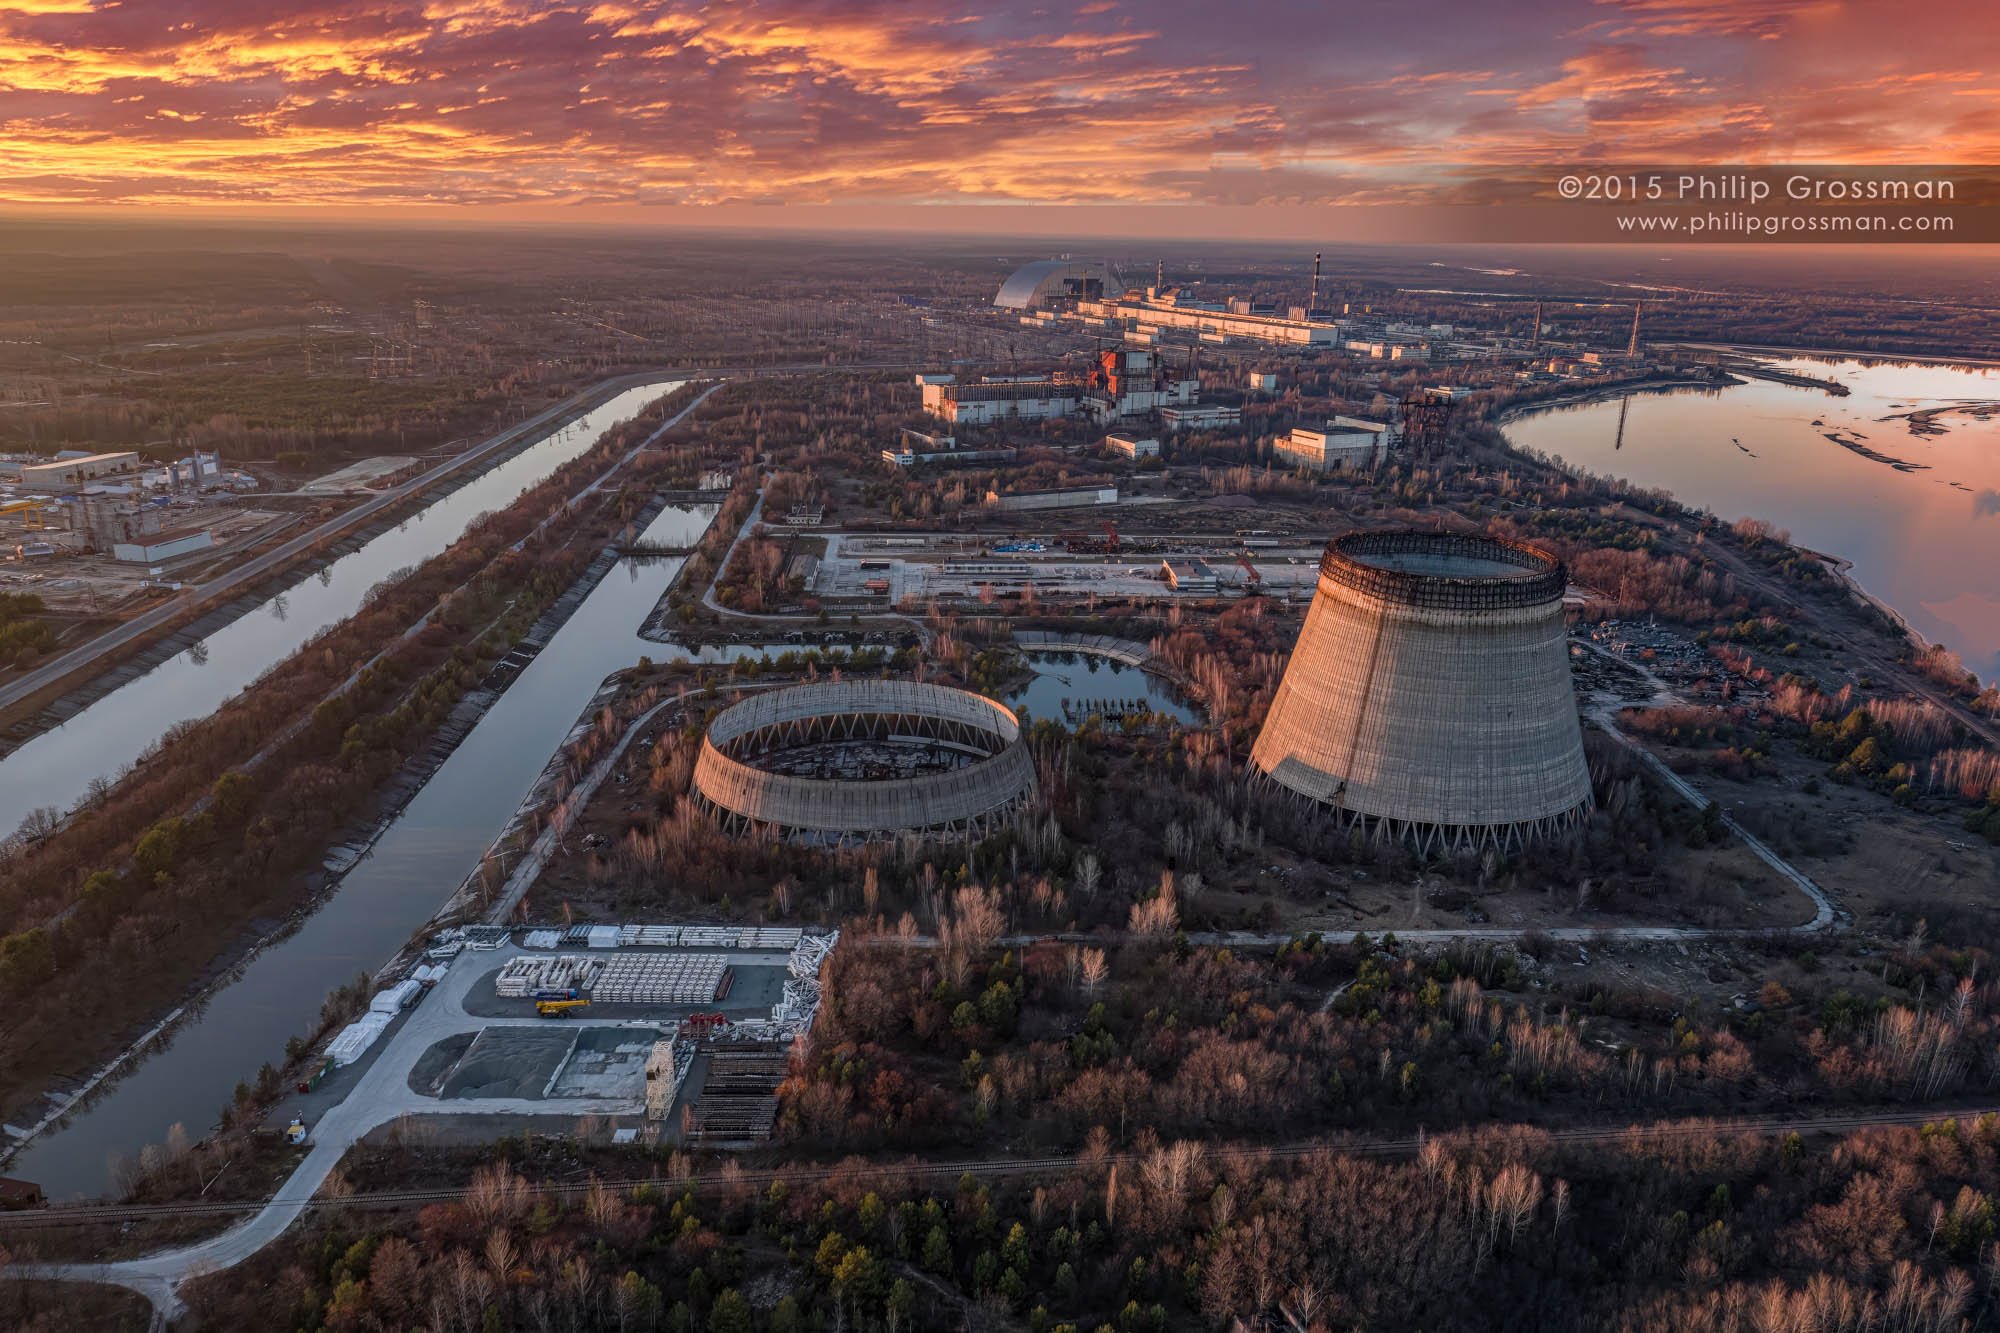 Чернобыль сейчас 2023 год. Атомная станция Чернобыль 2023. Атомная электростанция Чернобыль сейчас. Припять 2022. Чернобыль атомная станция сейчас 2023.